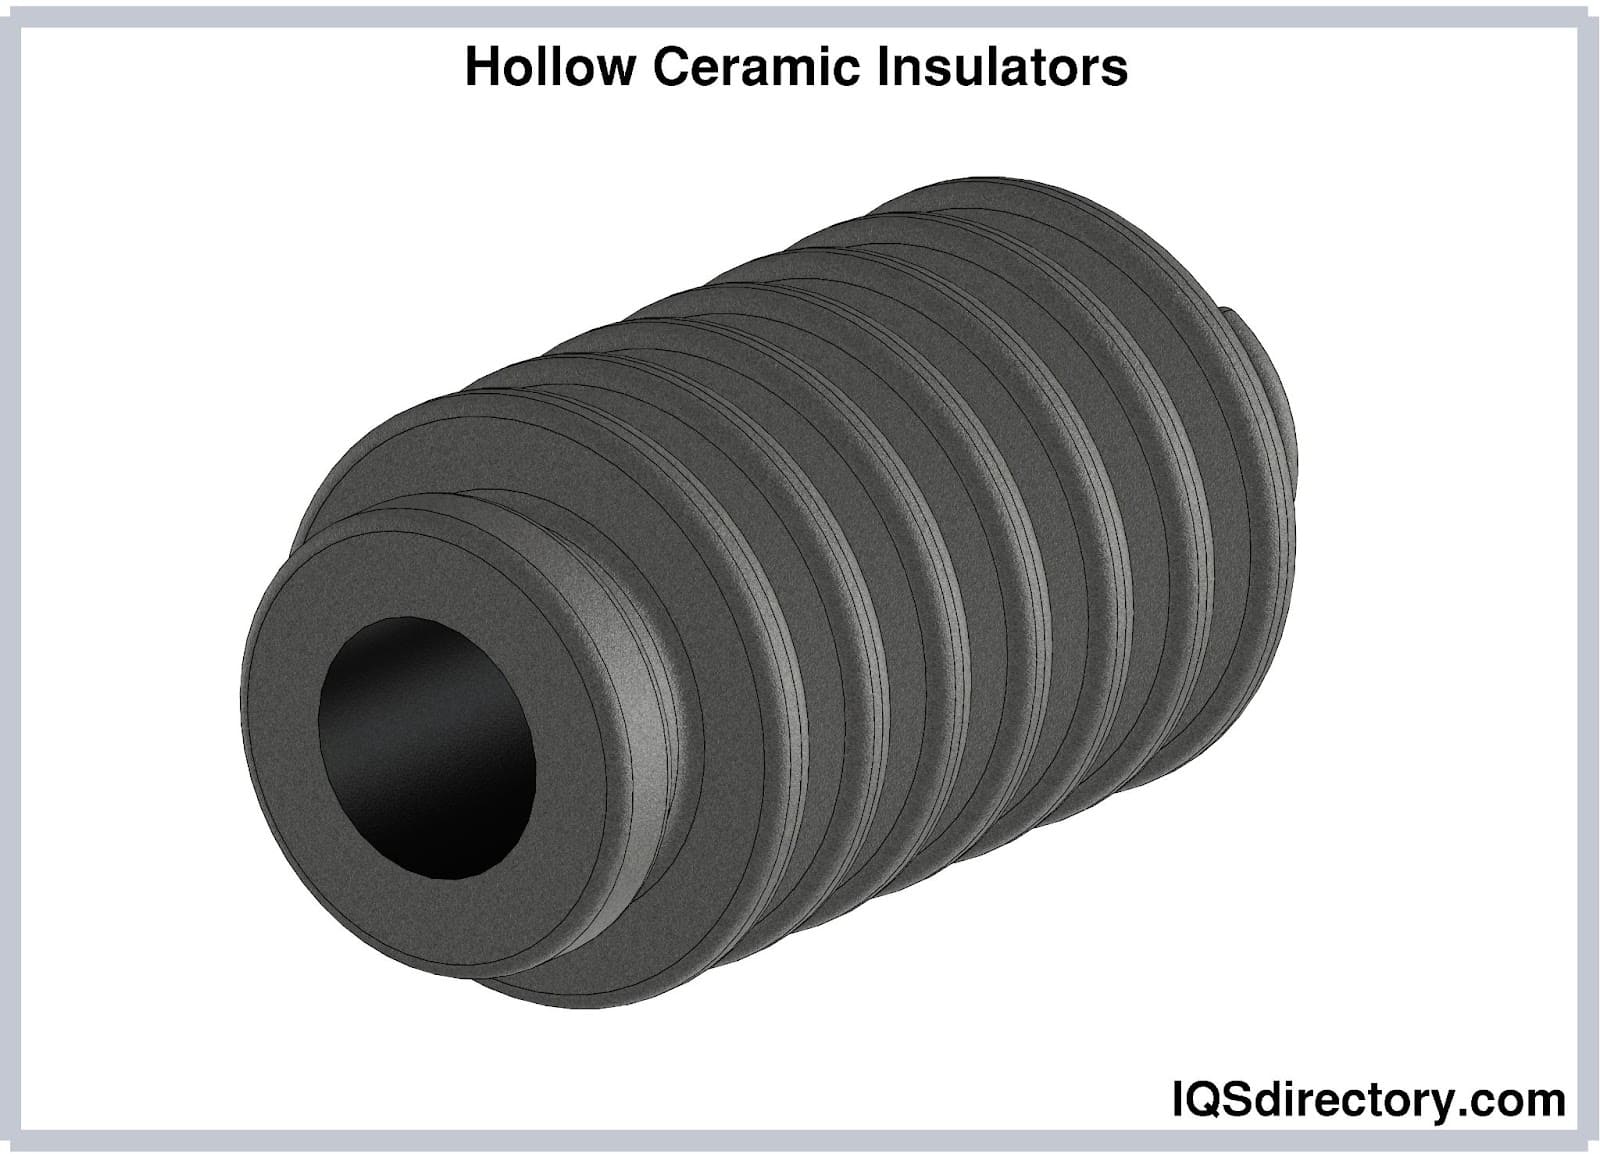 Hollow Ceramic Insulators